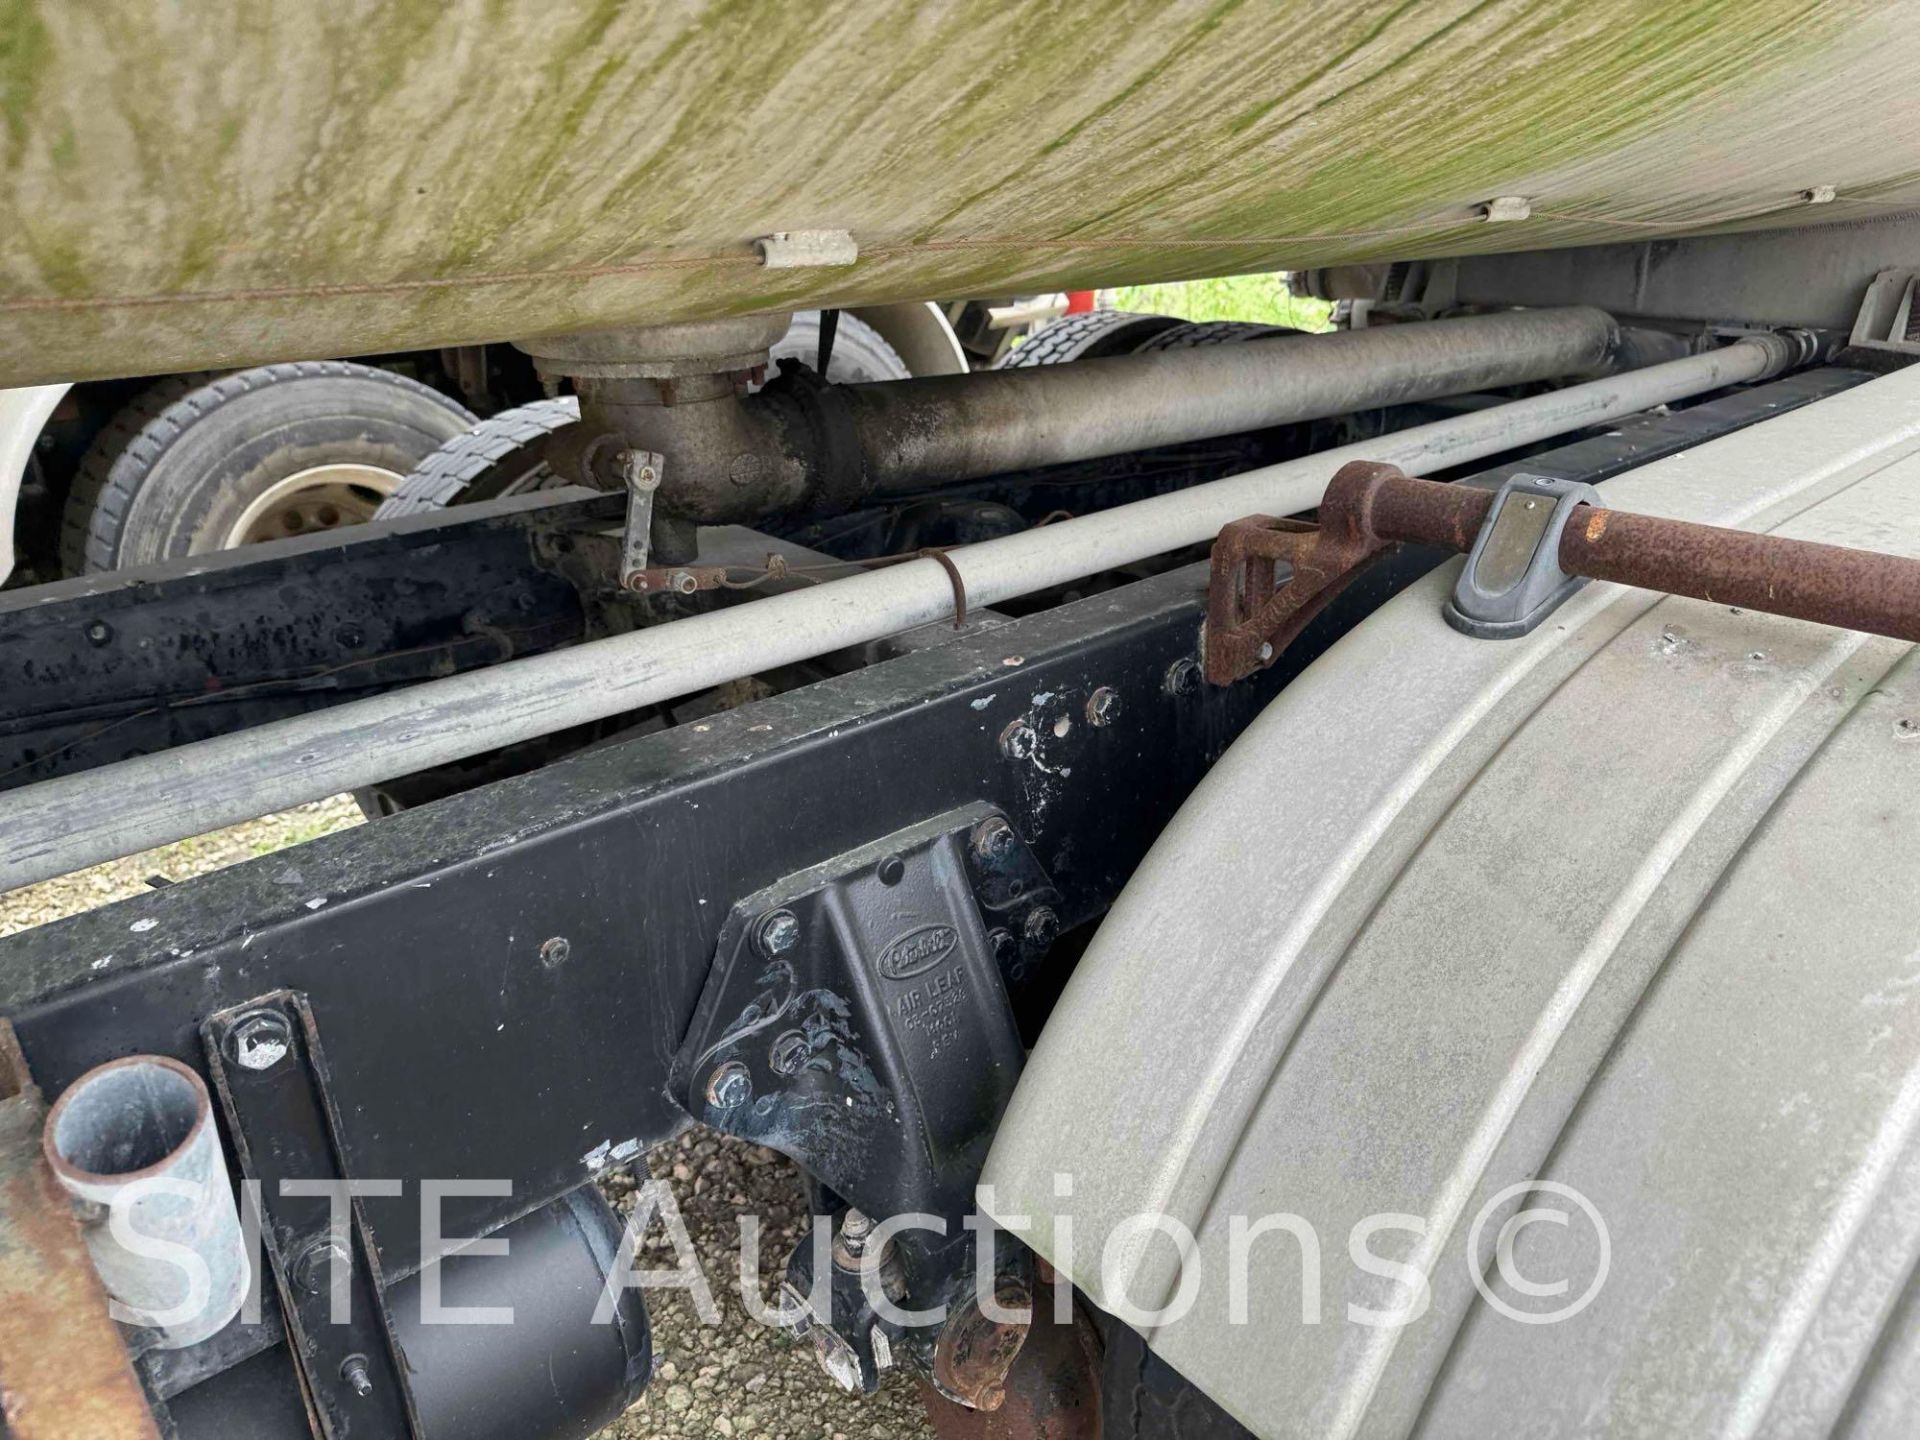 1998 Peterbilt 377 T/A Fuel Truck - Image 38 of 52